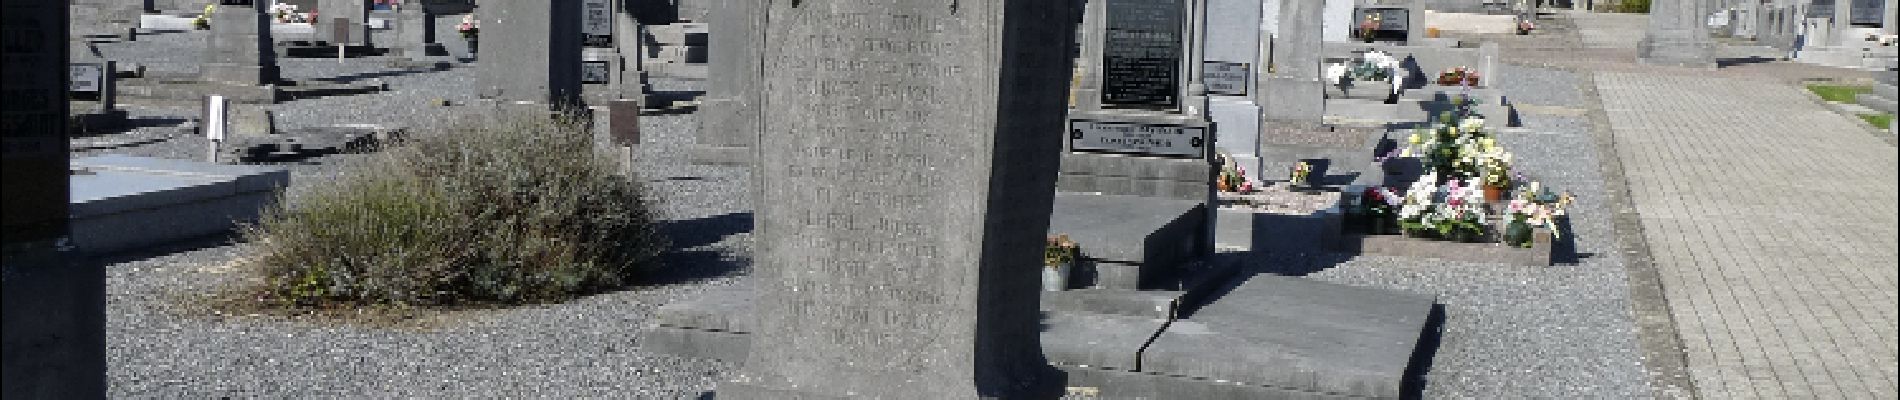 POI Étalle - Sépultures historiques au cimetière d'Etalle - Photo